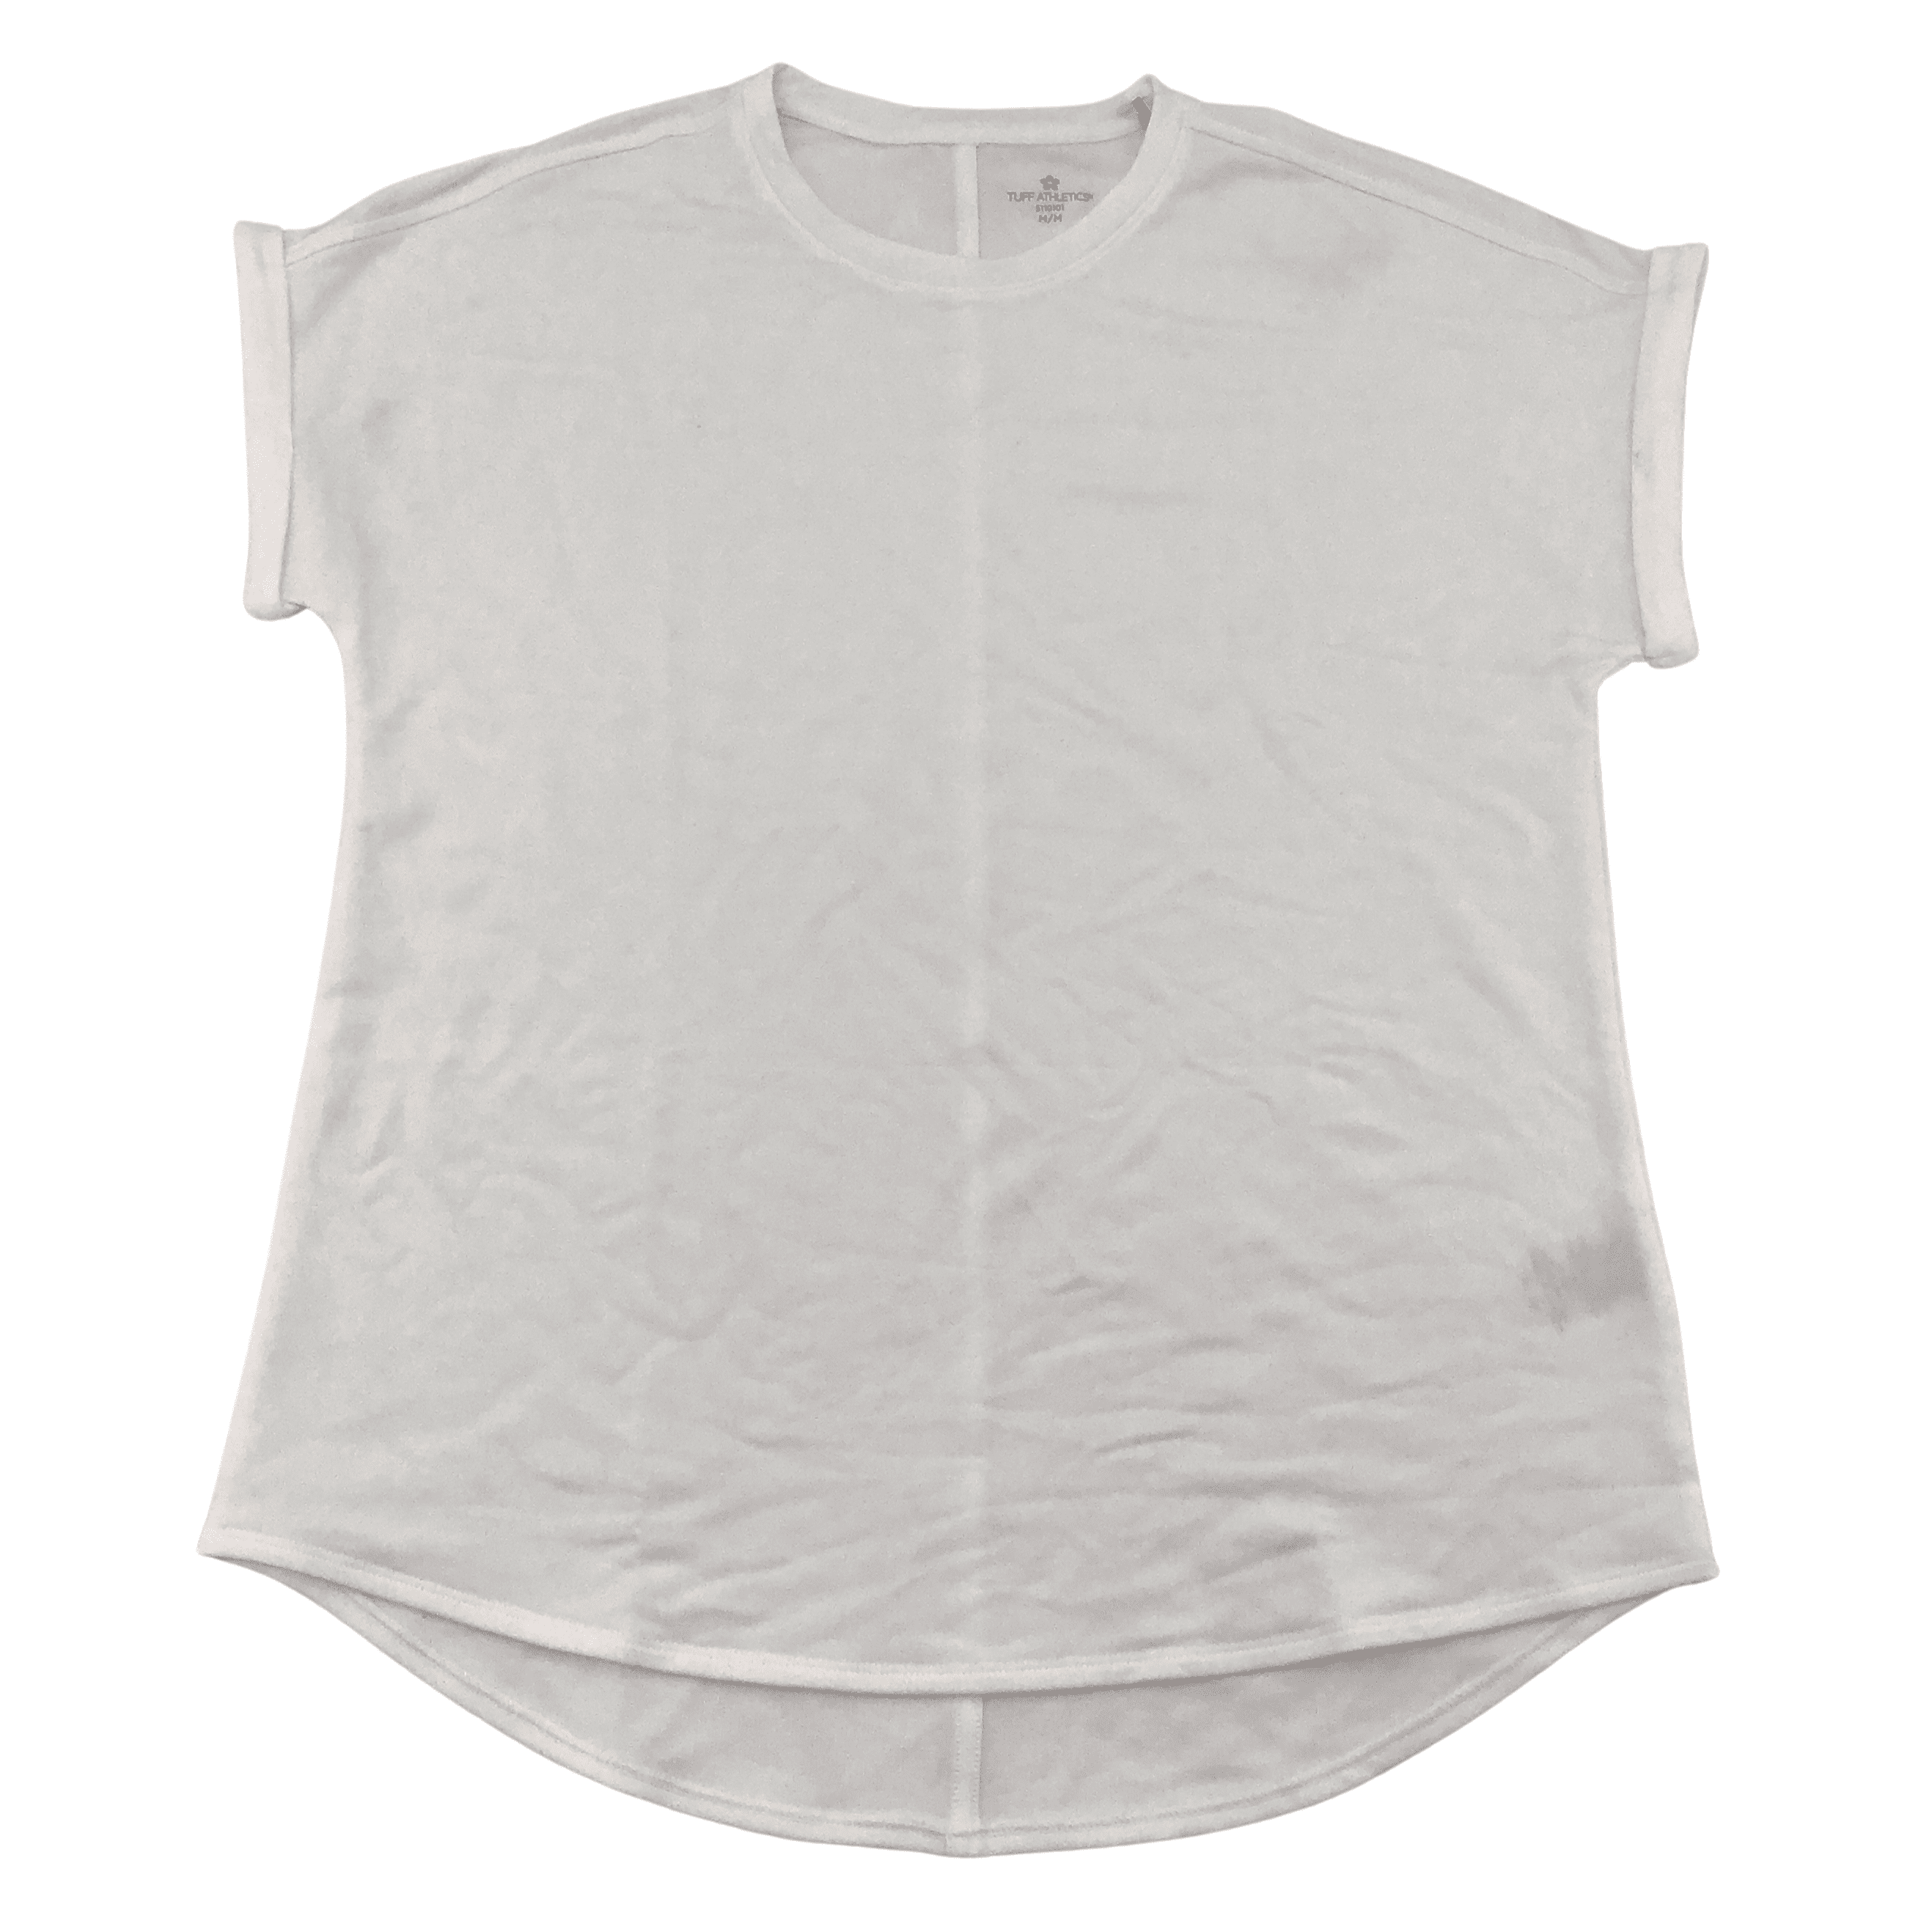 Tuff Athletics Women’s Off White T-Shirt / Various Sizes